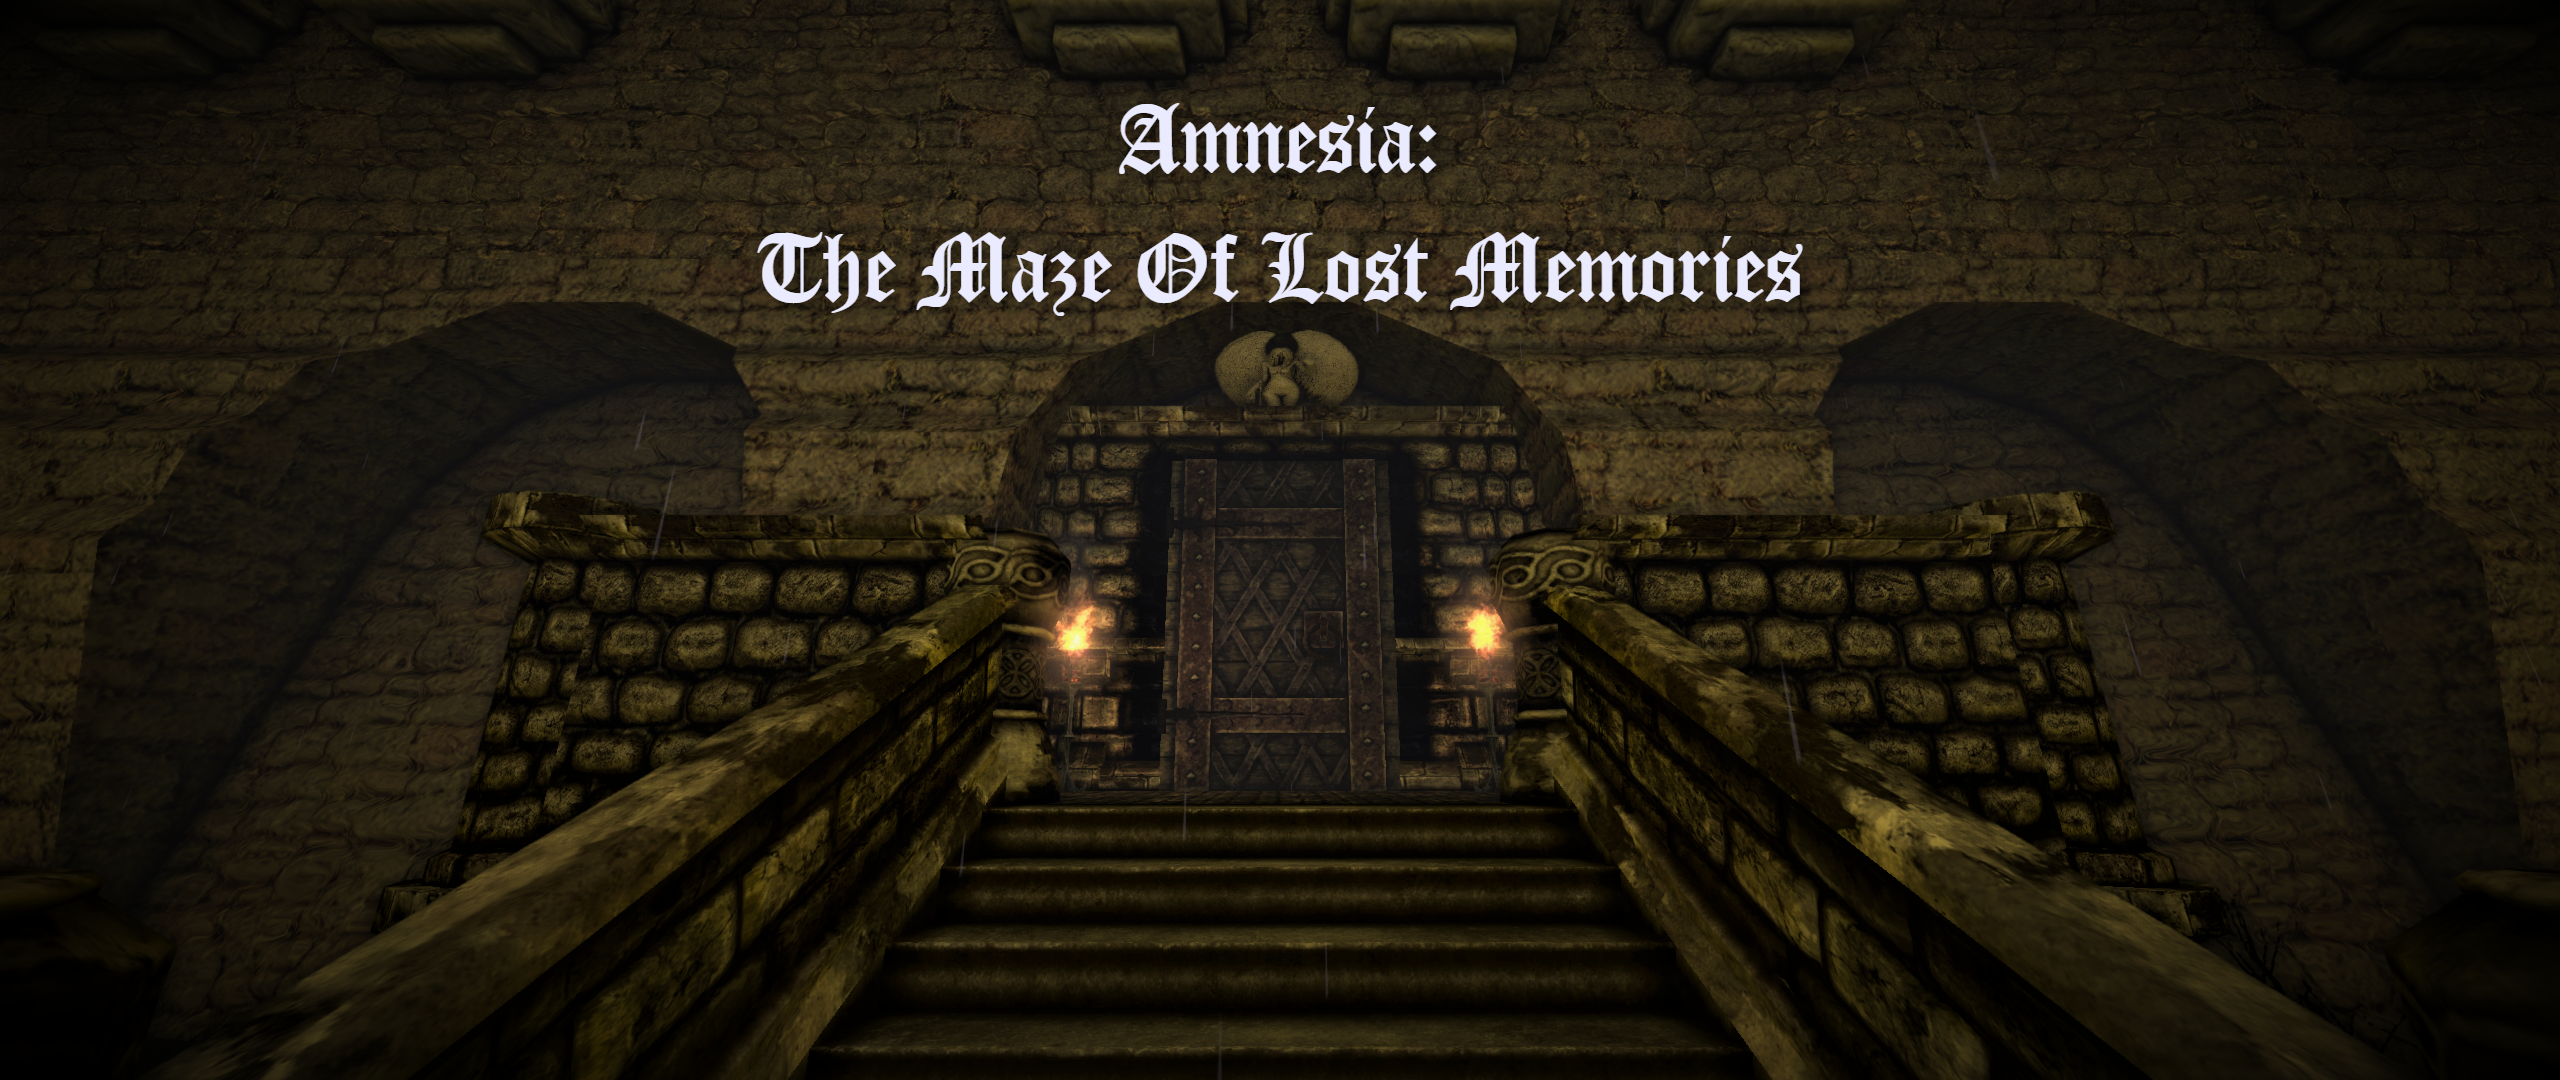 Forgotten Memories - The Basement - Maze Mode - Full Walkthrough